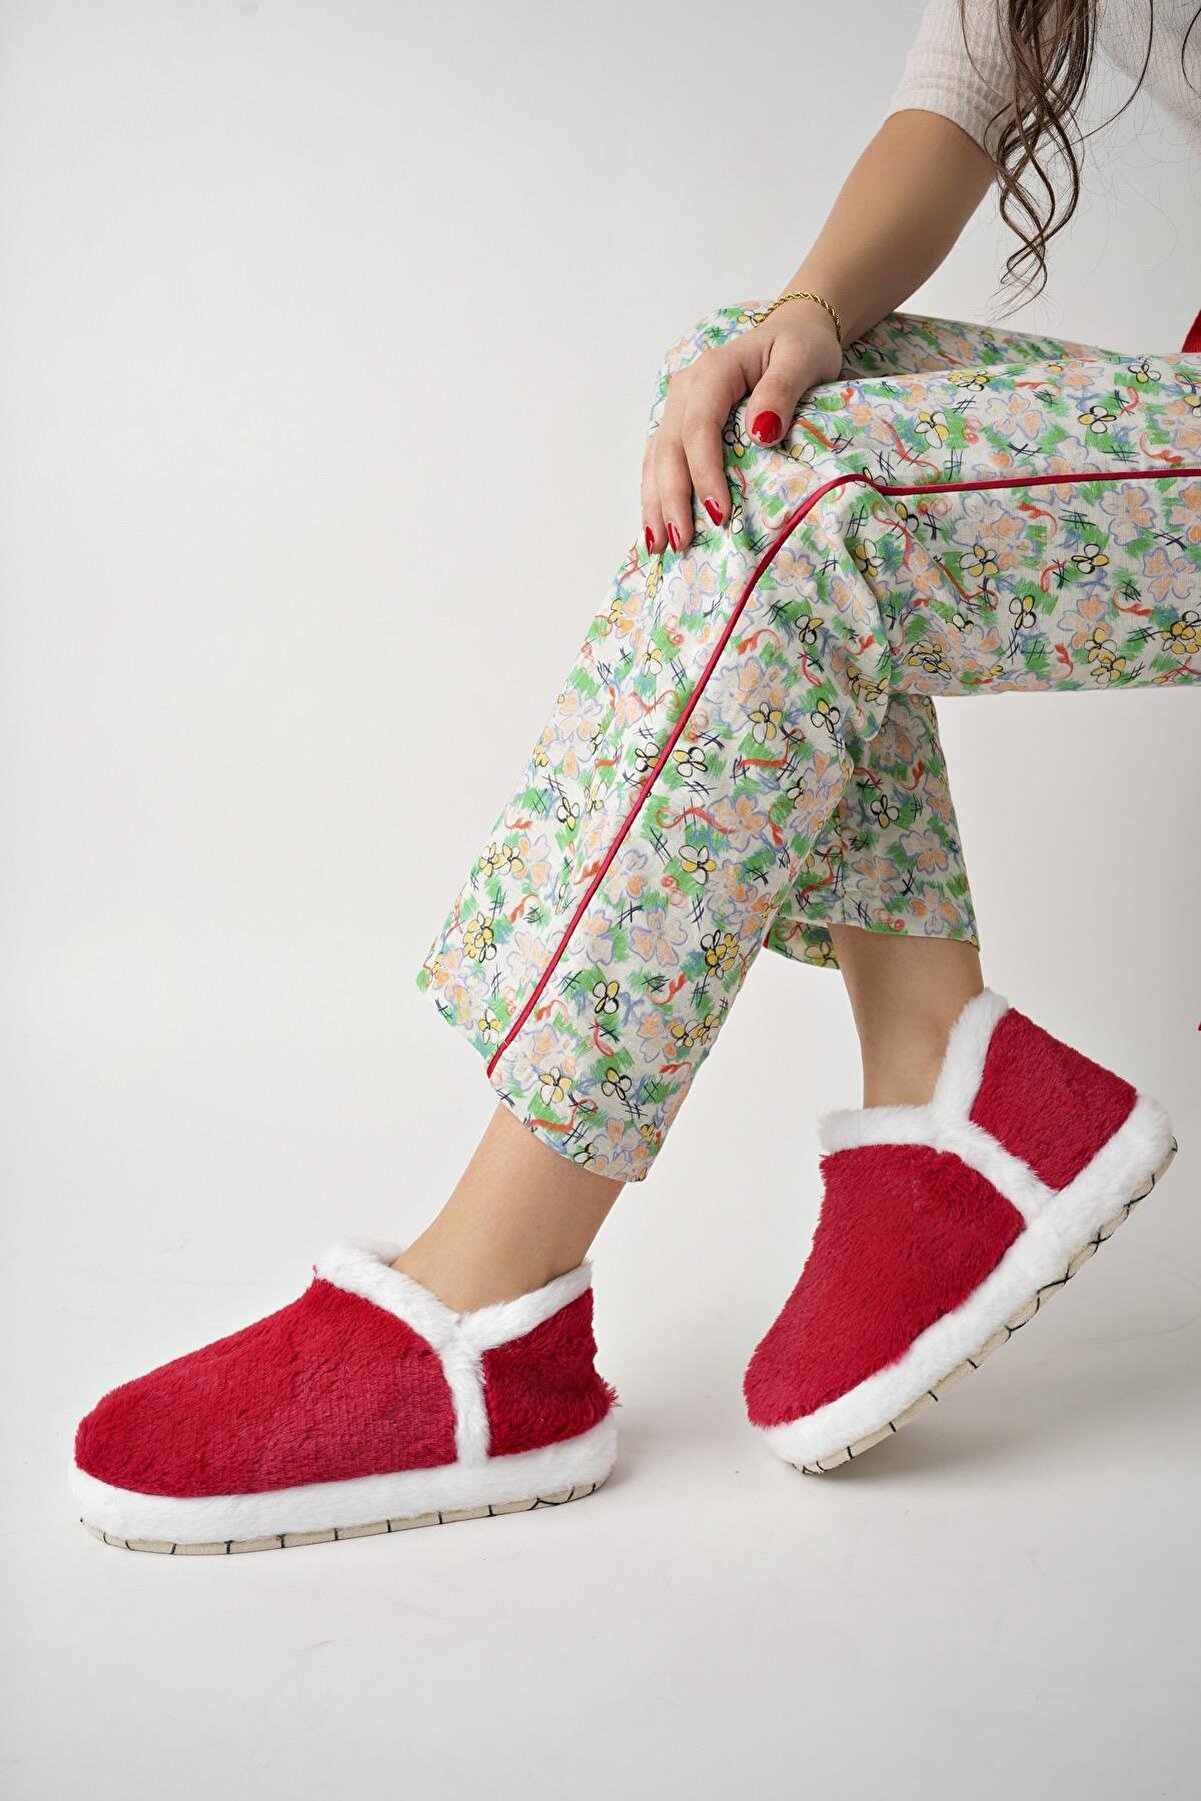 VIOLA Kadın Panduf Noel Yılbaşı  Ev Ayakkabısı Ev Botu Hediyelik Ev Botu Kalın Hafif Taban STC418